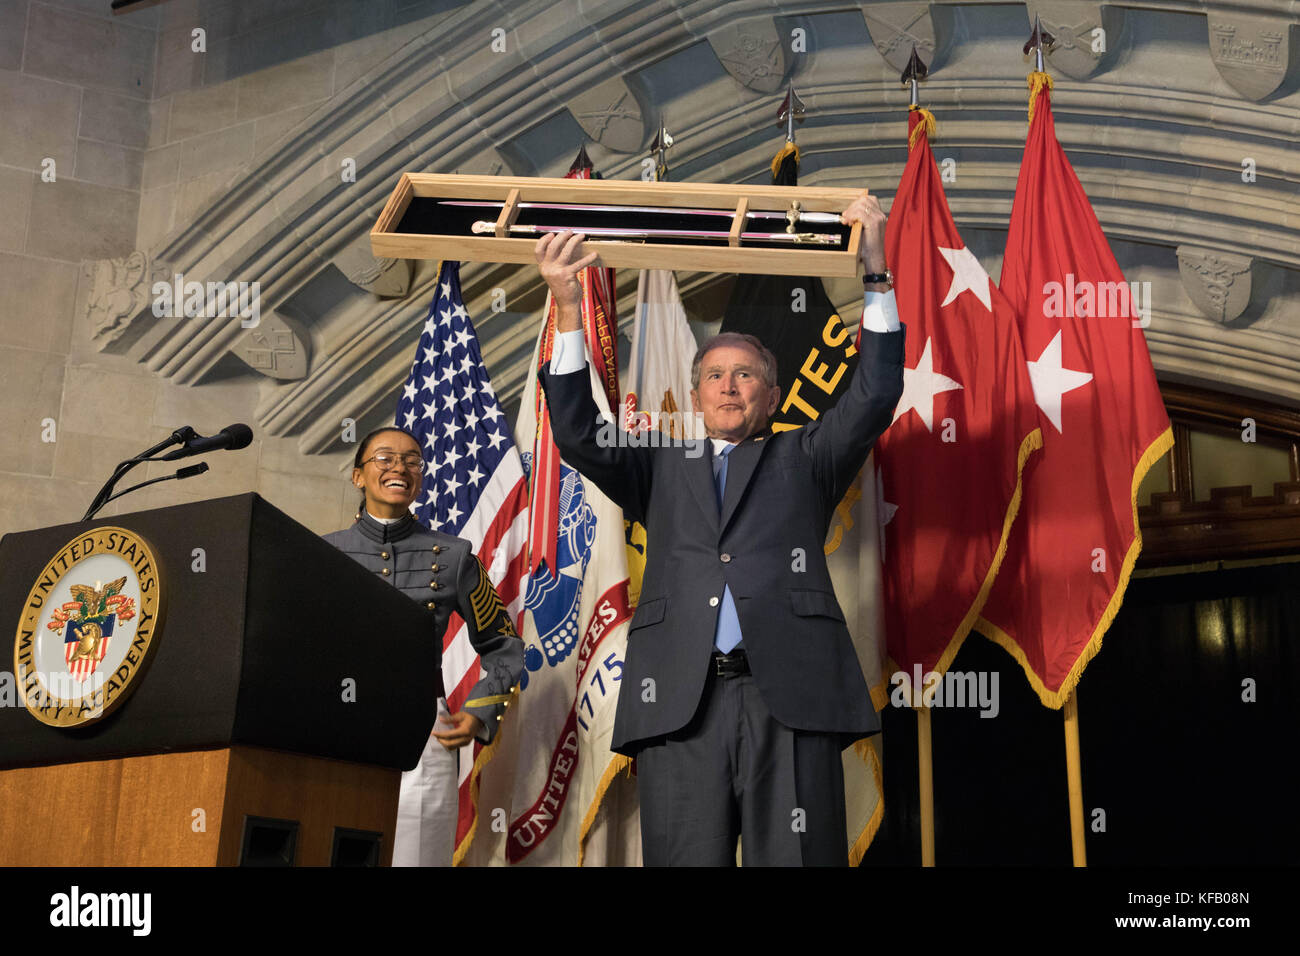 Der frühere US-Präsident George w. Bush (Mitte) erhält die Sylvanus Thayer Preis während einer Zeremonie an der US-Militärakademie in West Point, den 19. Oktober 2017 in West Point, New York. (Foto von Michelle eberhart über planetpix) Stockfoto